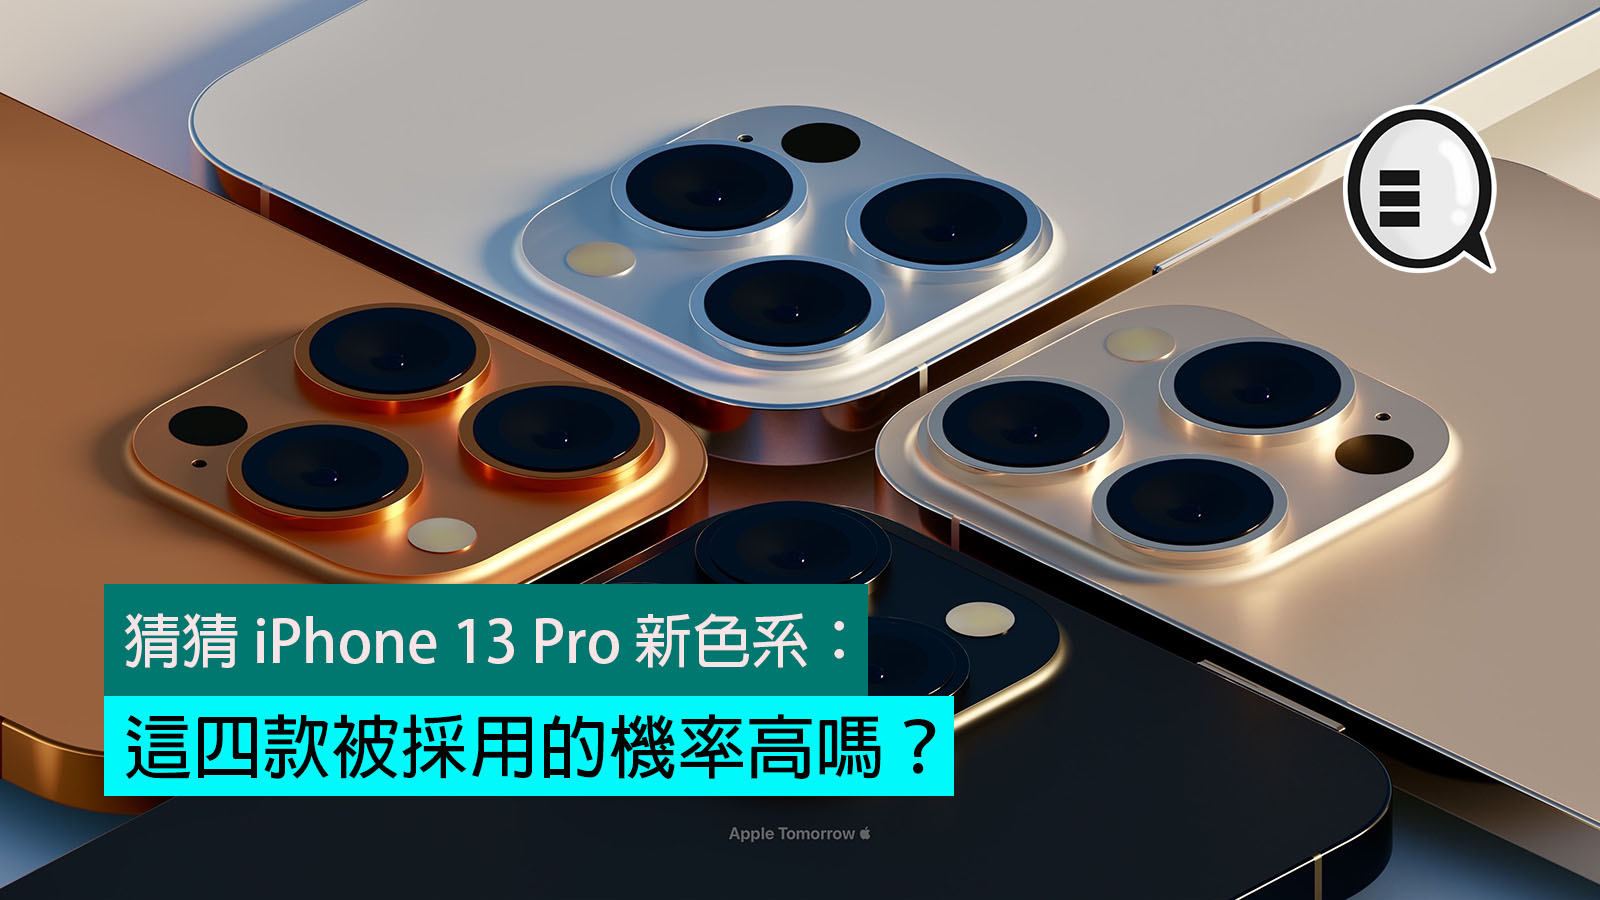 猜猜iphone 13 Pro 新色系 這四款被採用的機率高嗎